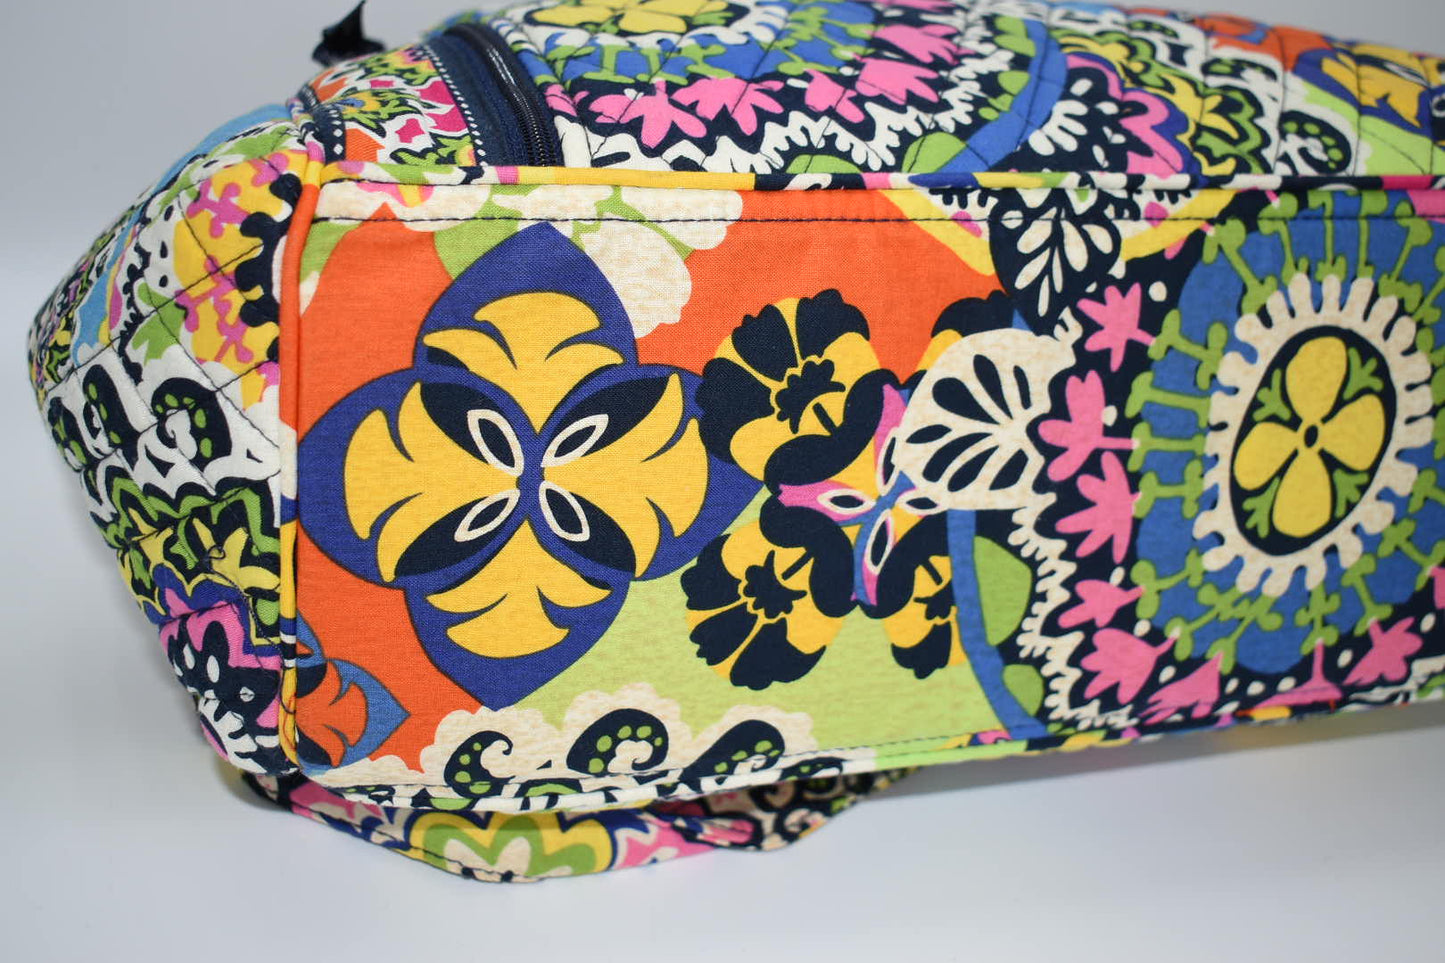 Vera Bradley Make A Change Diaper Bag in Rio Pattern